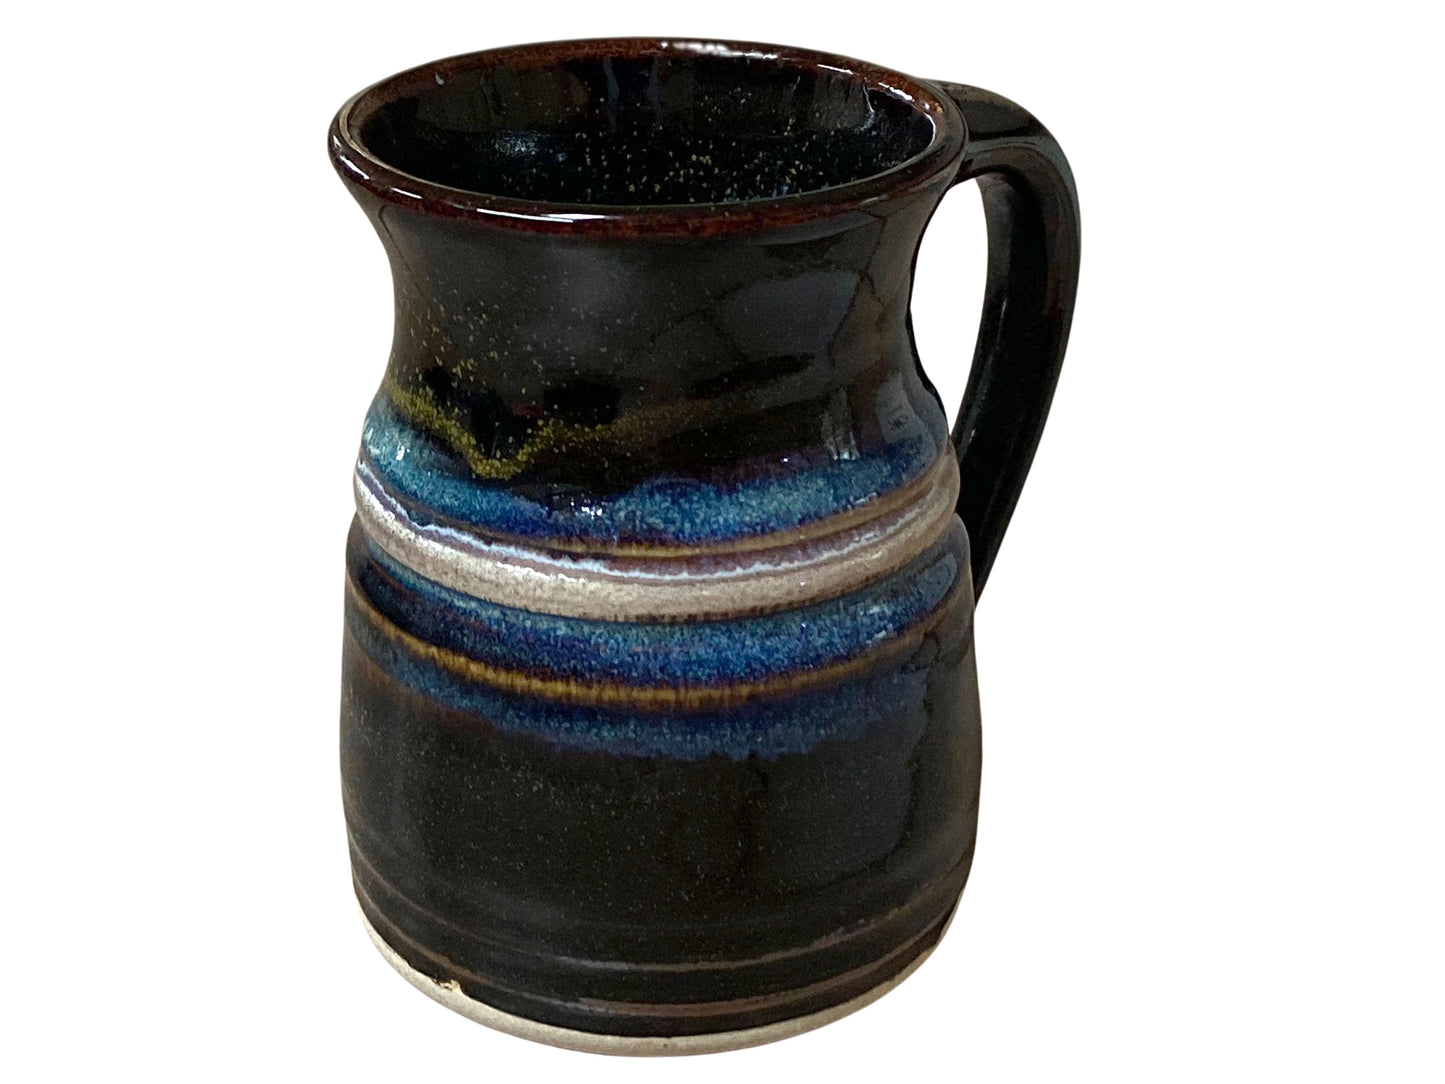 14 oz. Stoneware Coffee Mug